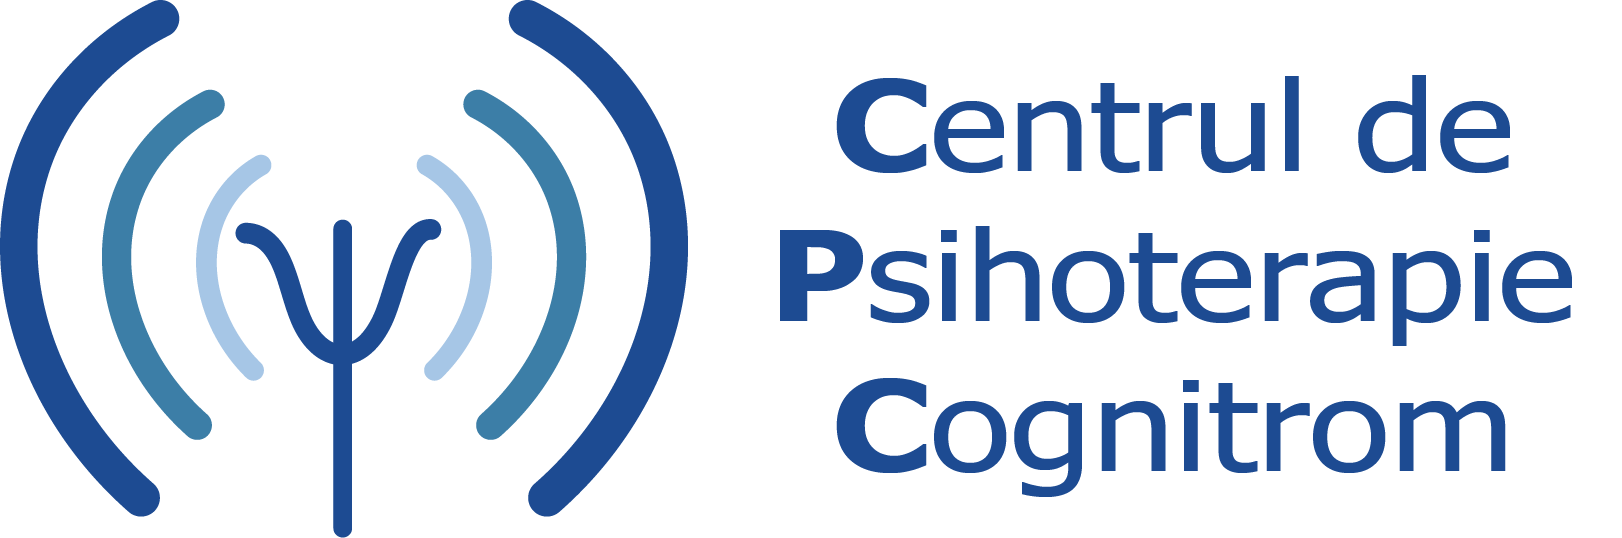 Centrul de psihoterapie Cognitrom - CPC - sigla